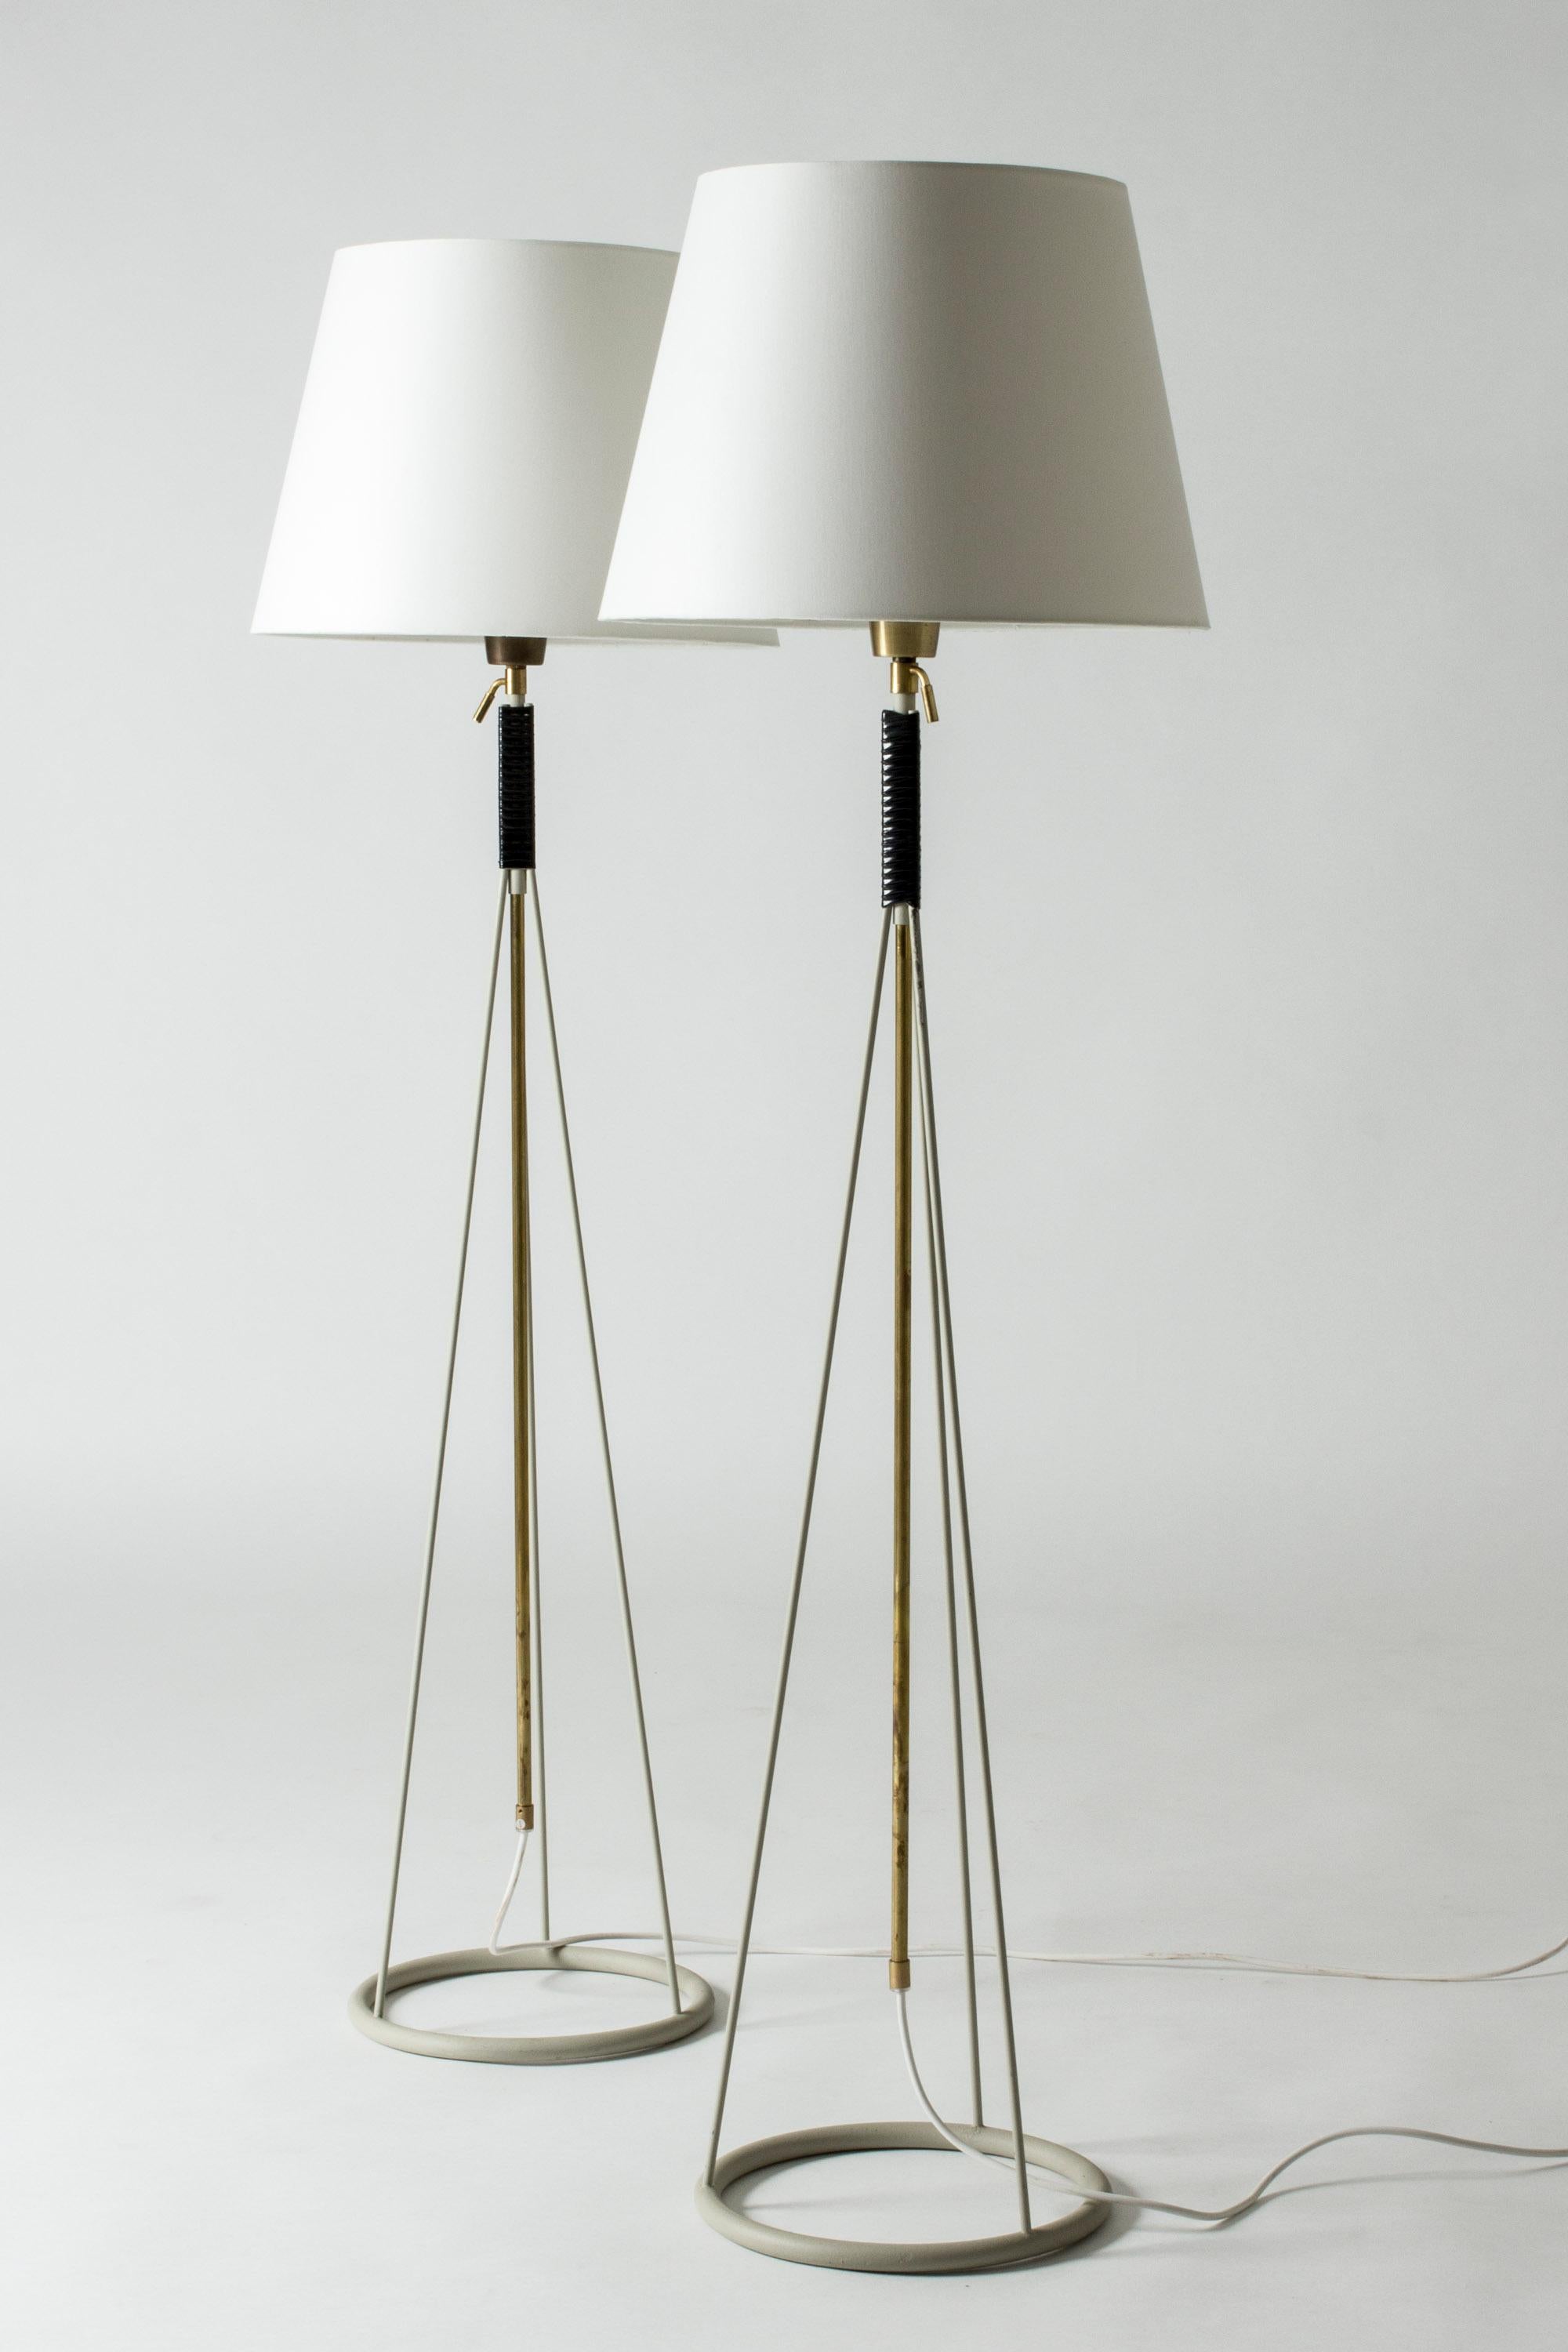 Scandinavian Modern Pair of Floor Lamps from Luco, Sweden, 1950s